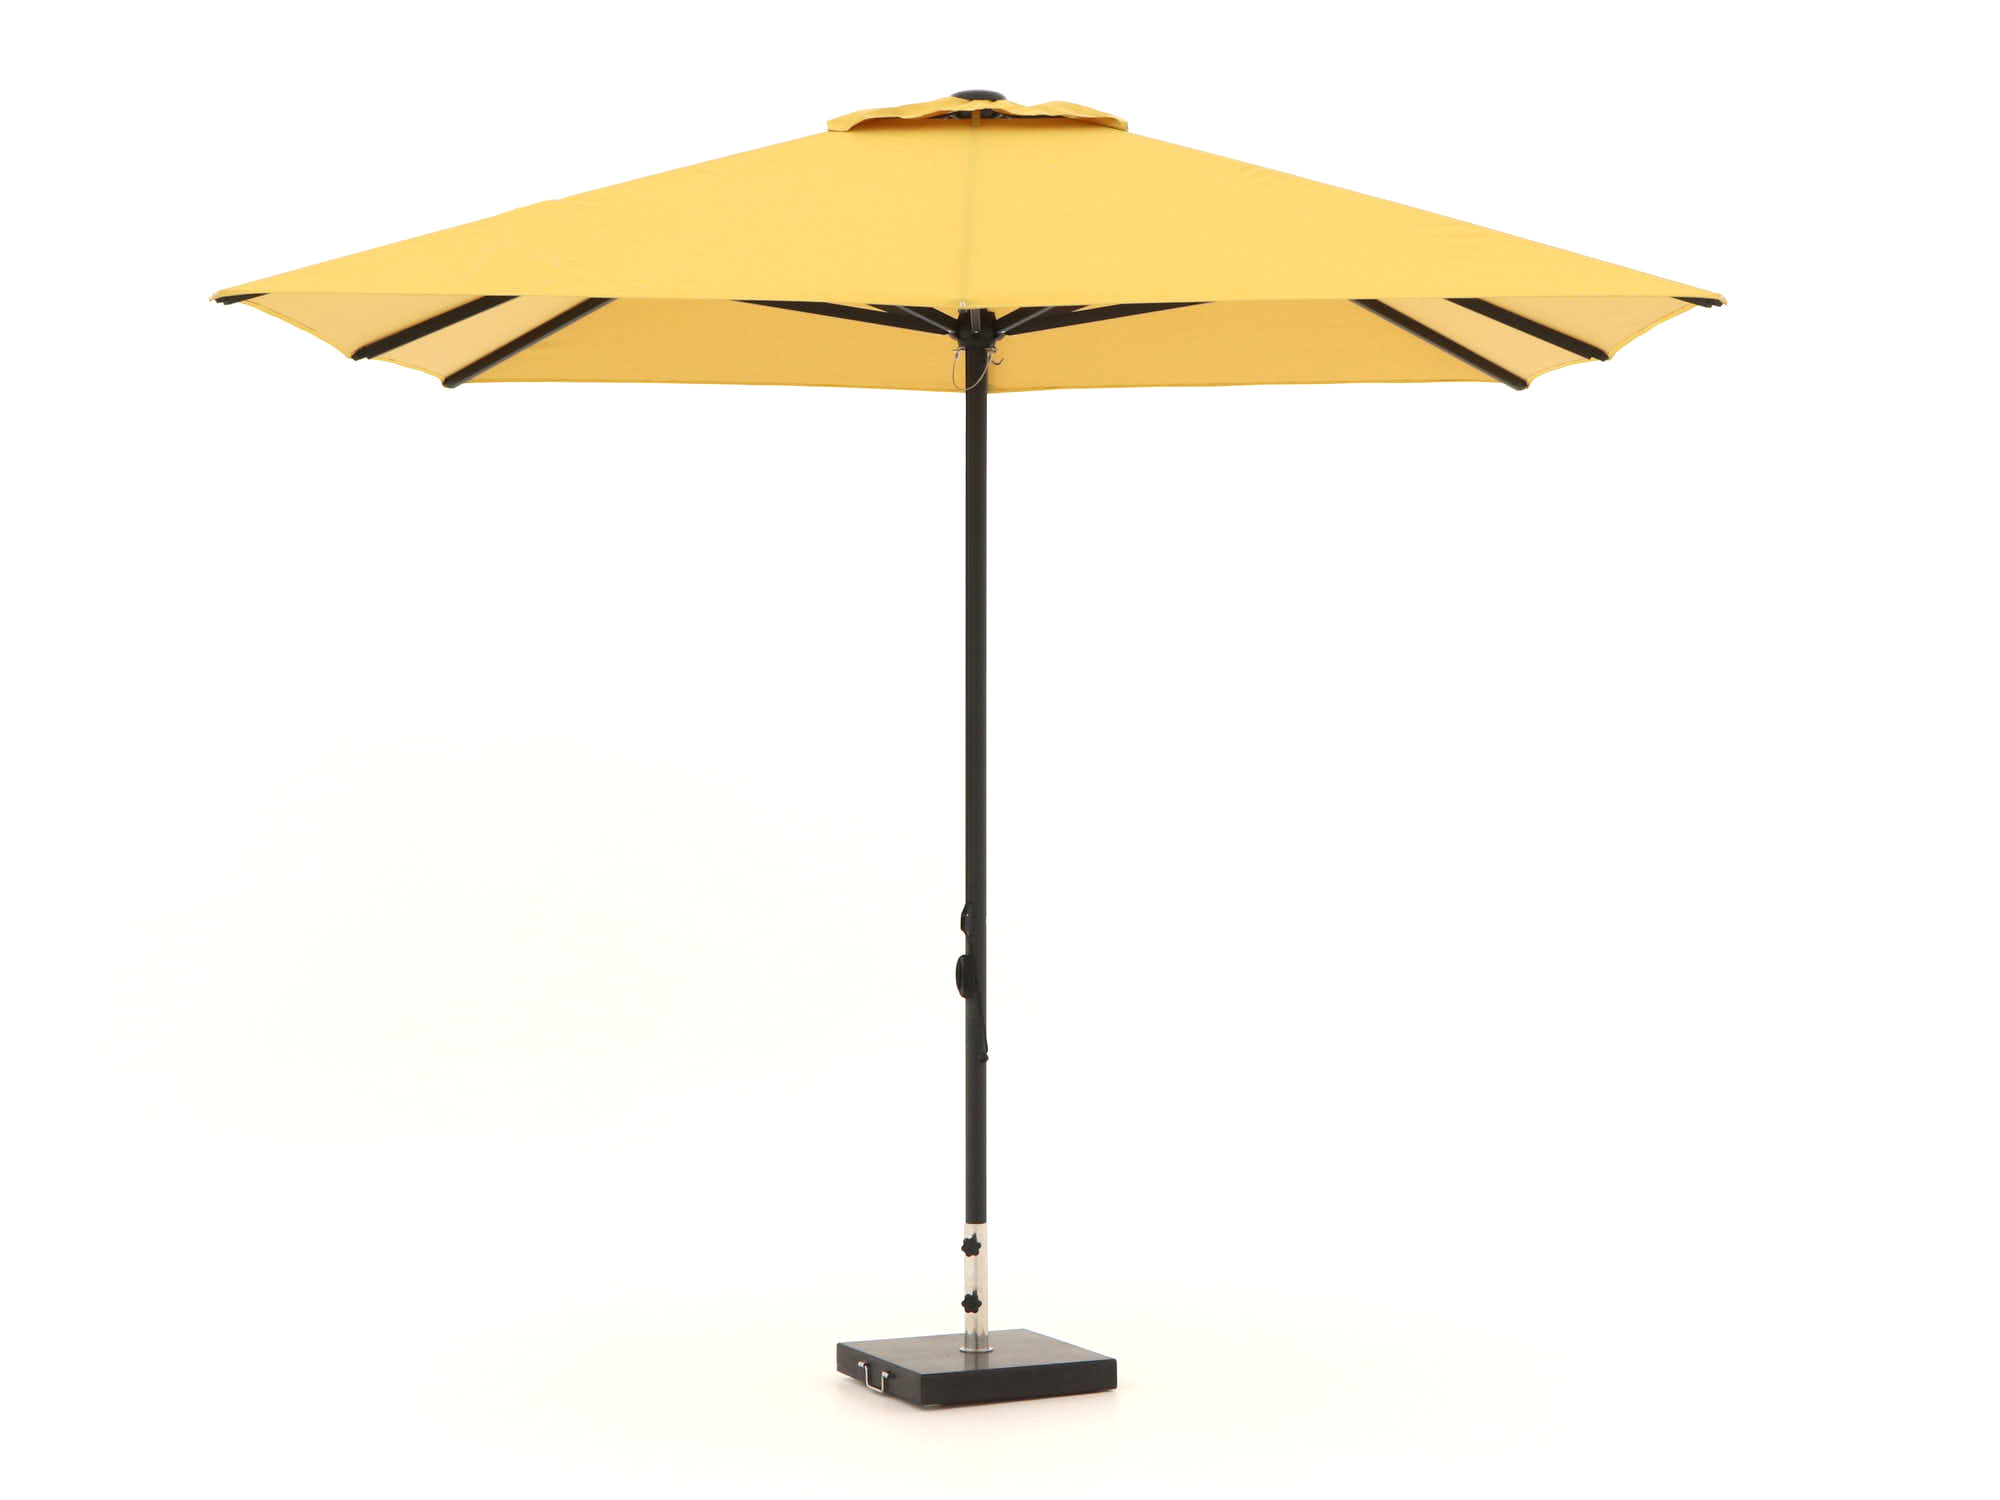 Shadowline Cuba parasol 300x300cm - Laagste prijsgarantie!